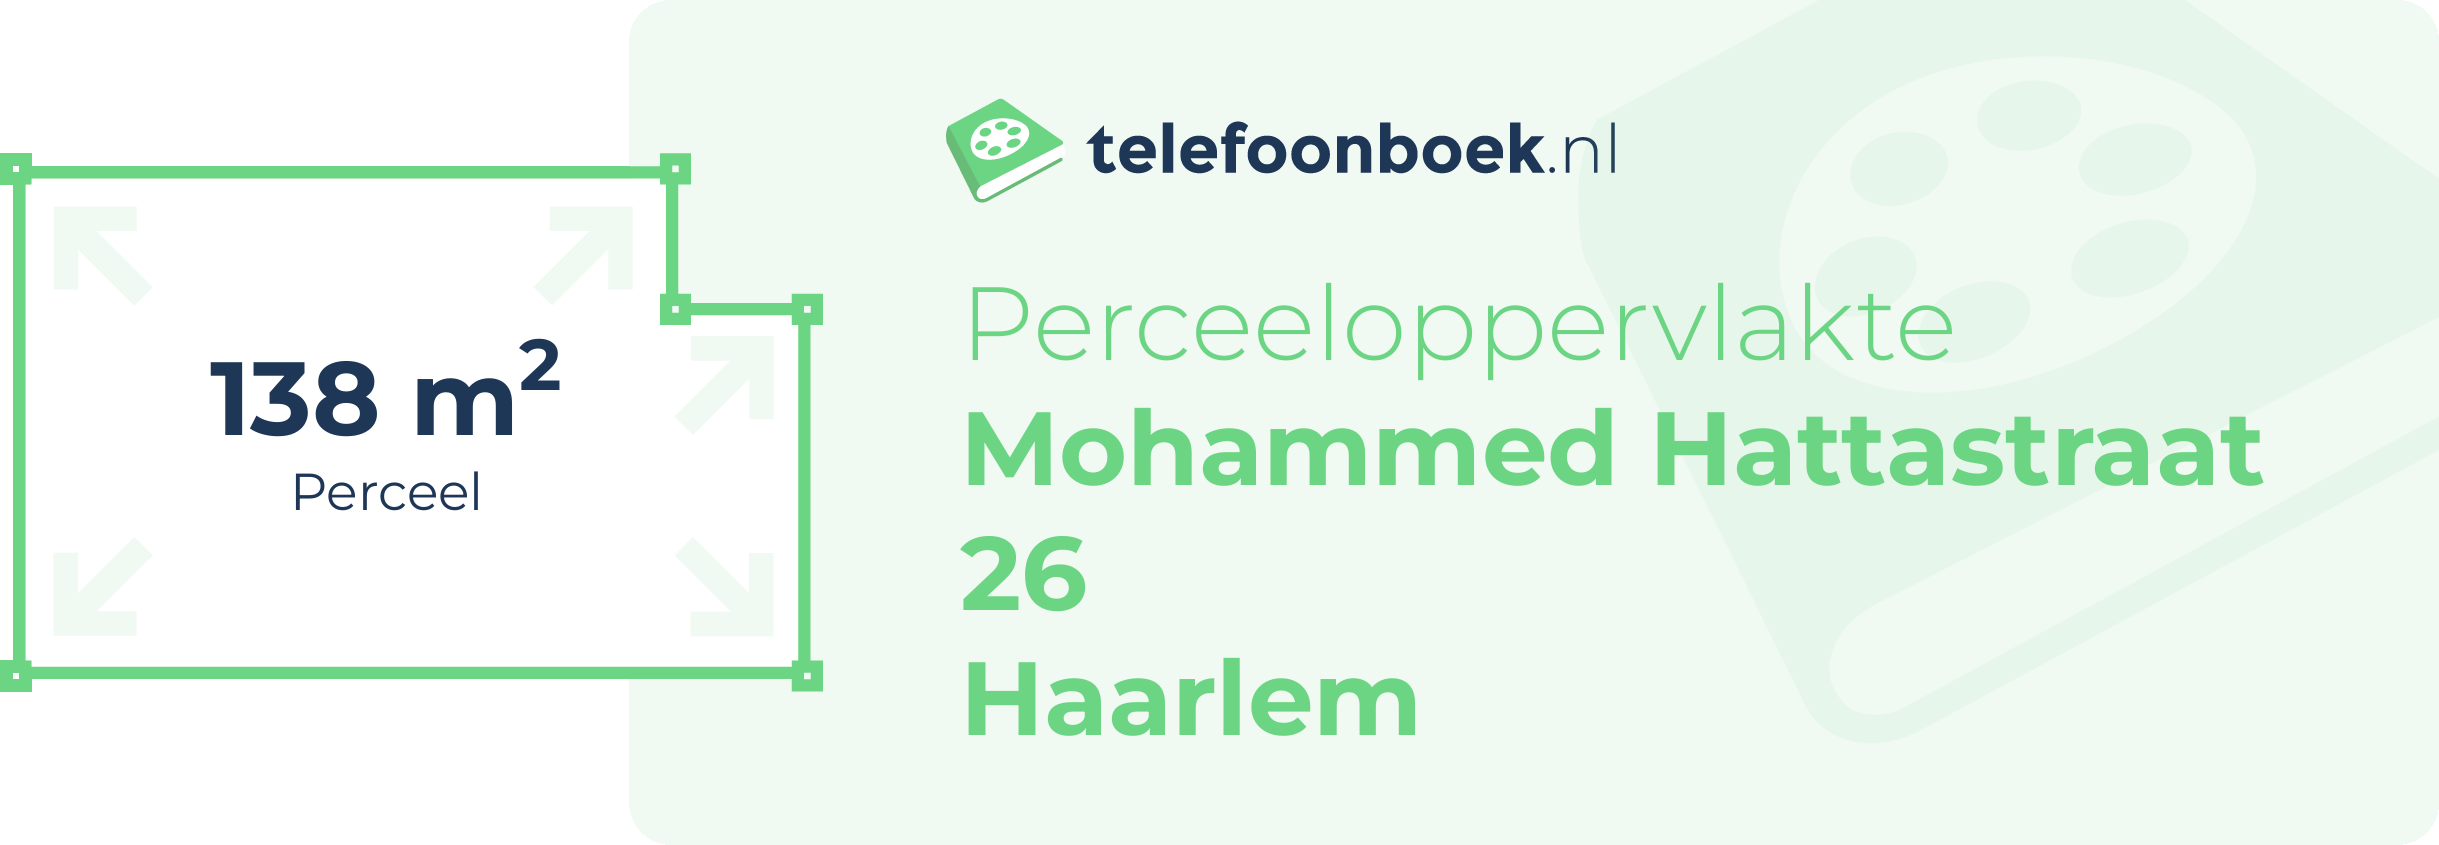 Perceeloppervlakte Mohammed Hattastraat 26 Haarlem